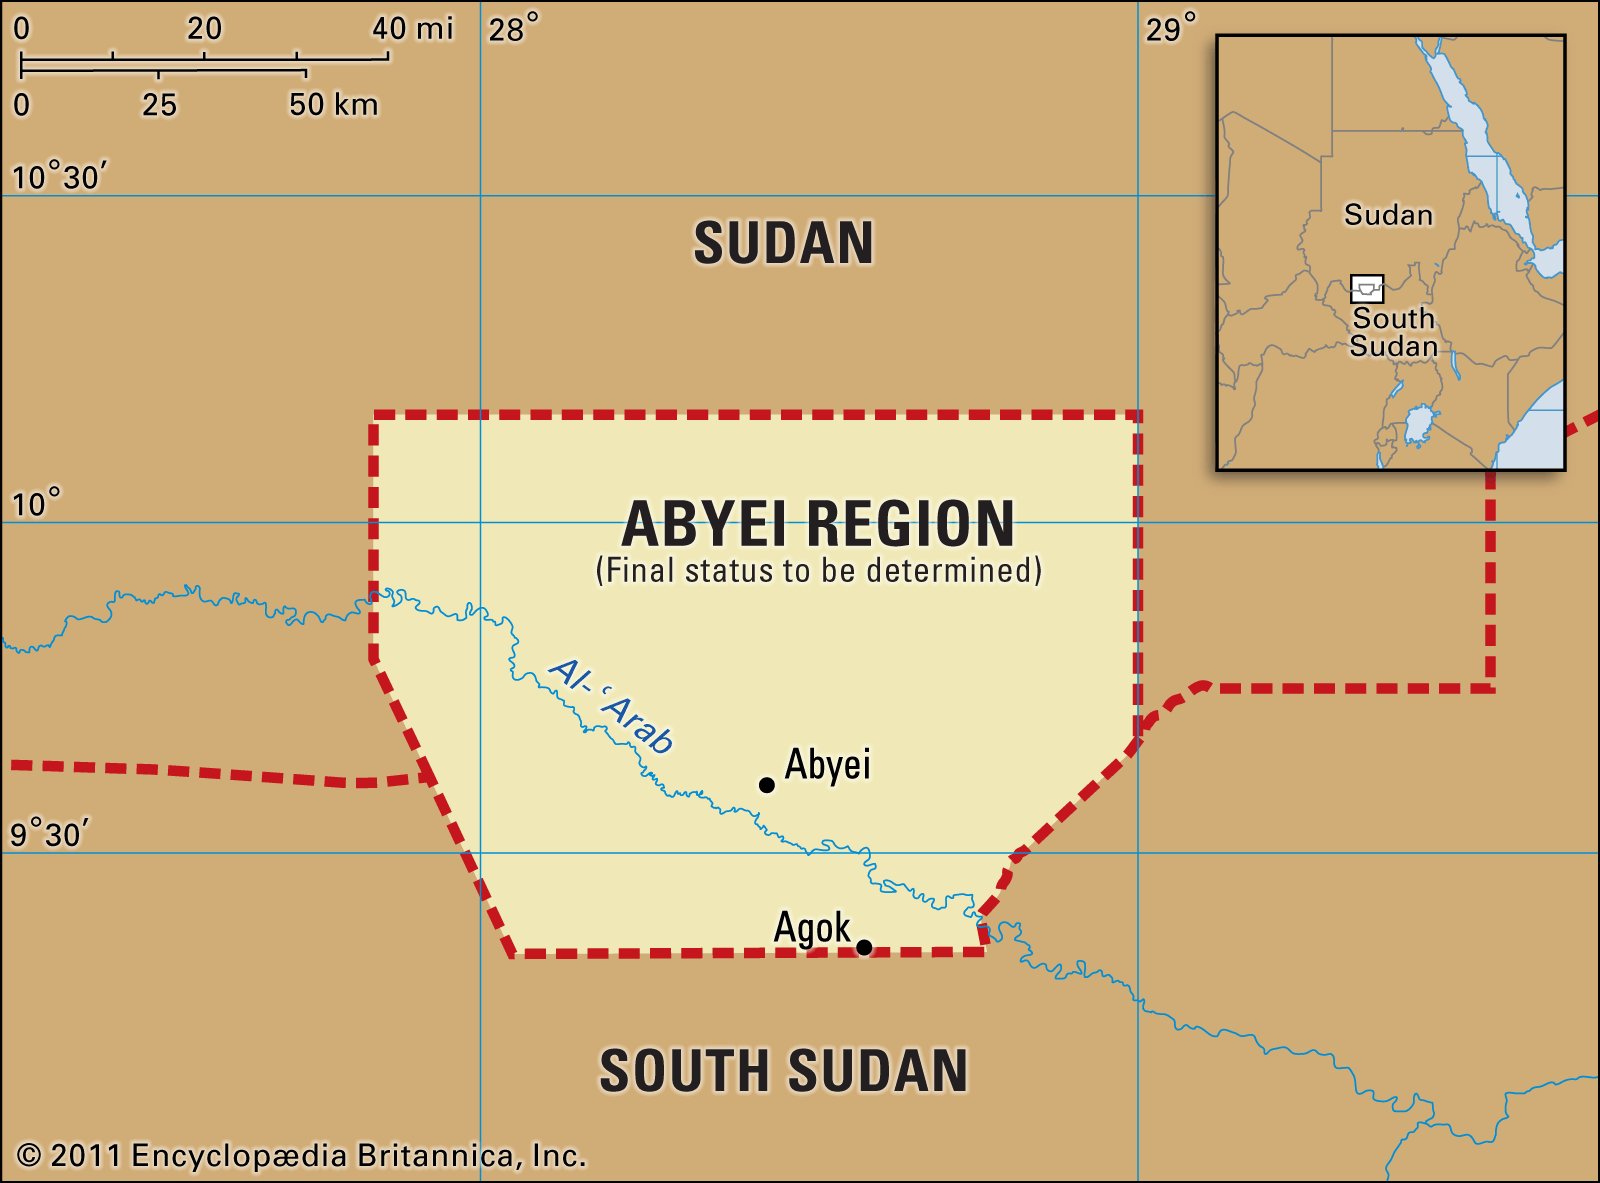 Armed men kill 12 people in Abyei